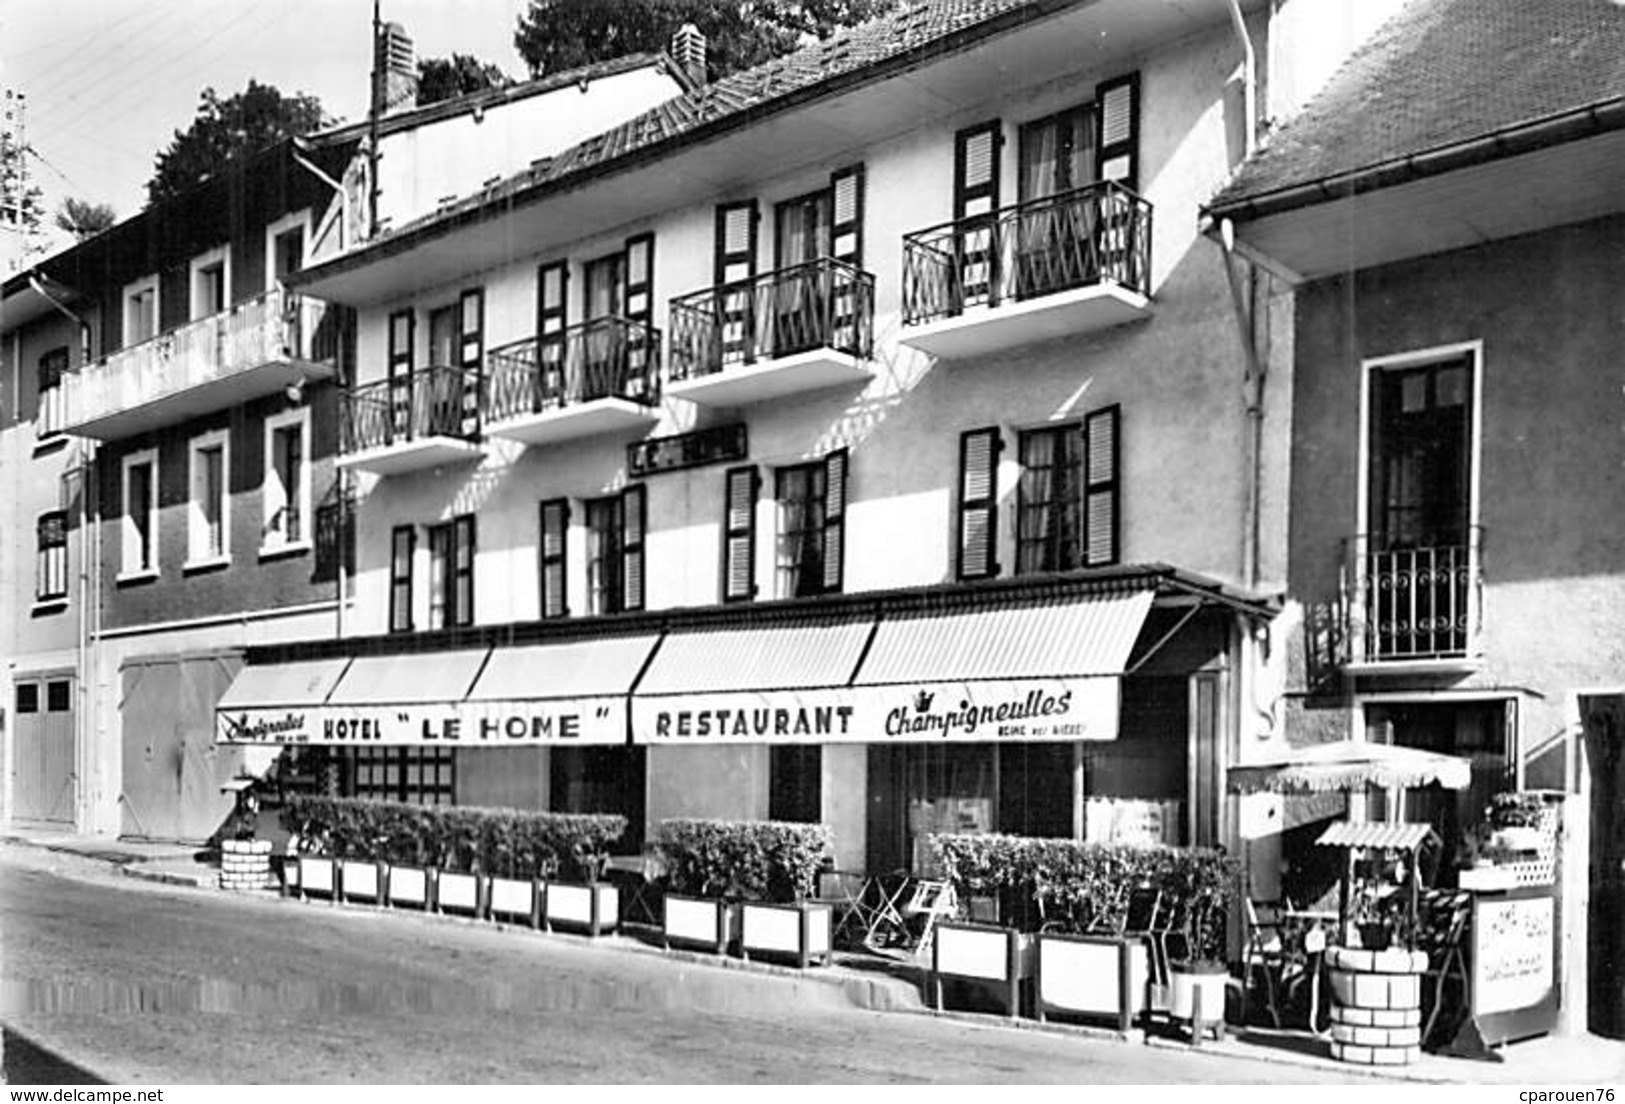 C P S M 74] Haute Savoie > Alby-sur-Cheran HOTEL RESTAURANT LE HOME SORLIER PROPRIETAIRE - Alby-sur-Cheran